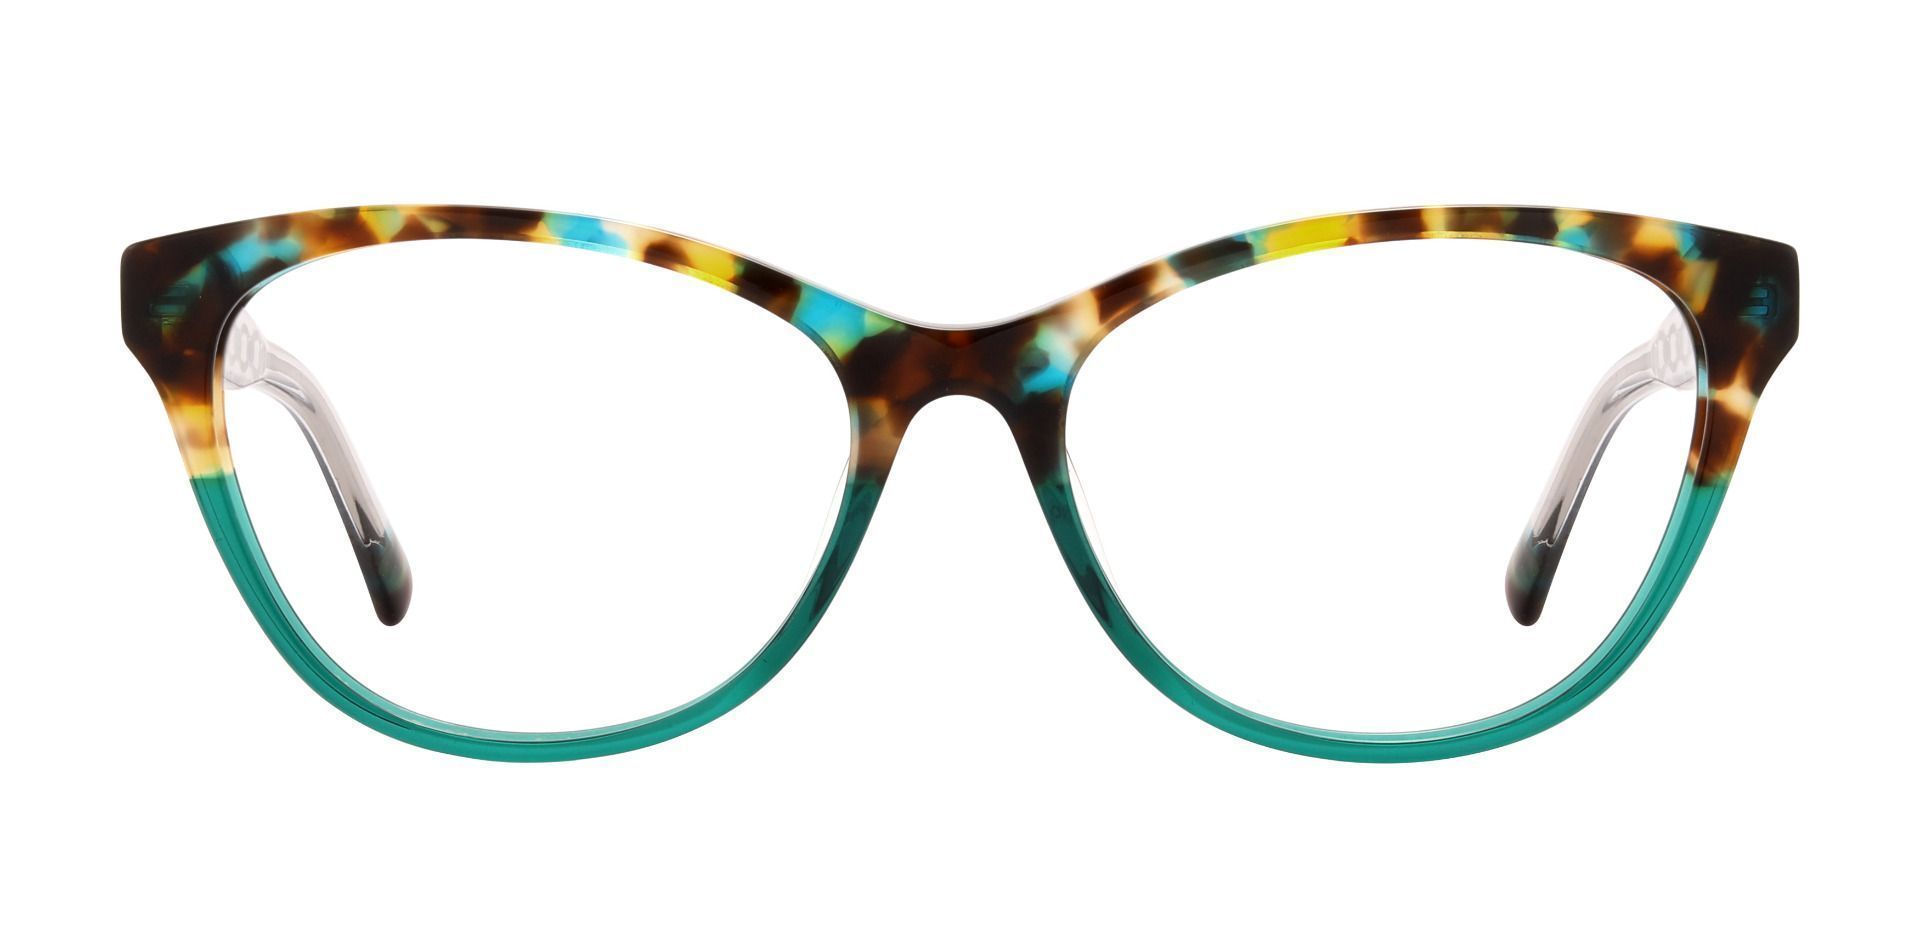 Knoxville Cat Eye Progressive Glasses Floral Women's Eyeglasses